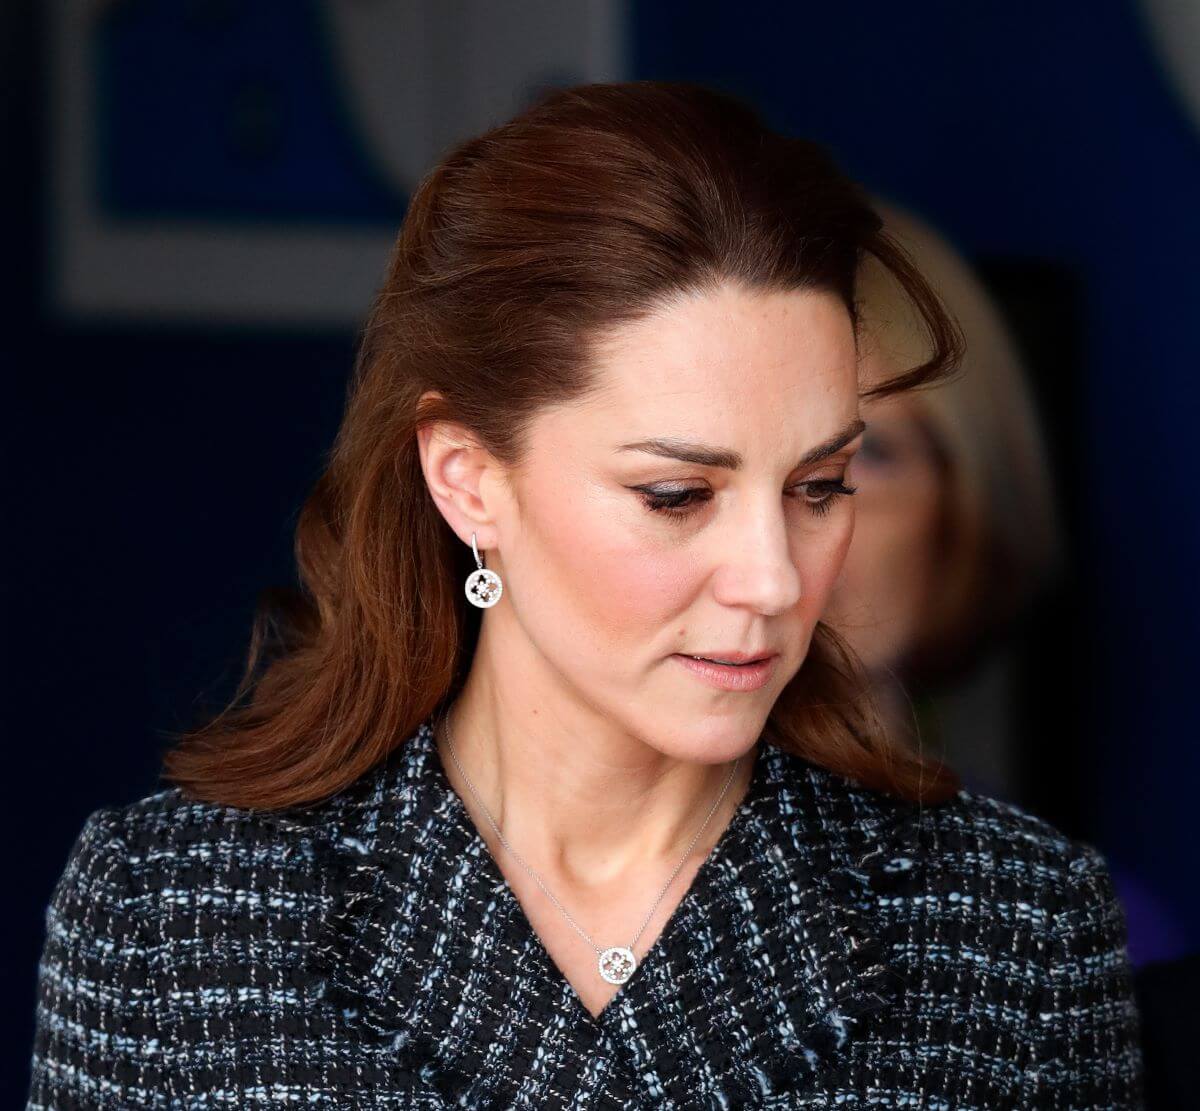 Kate Middleton departs after joining a workshop at a Children's Hospital